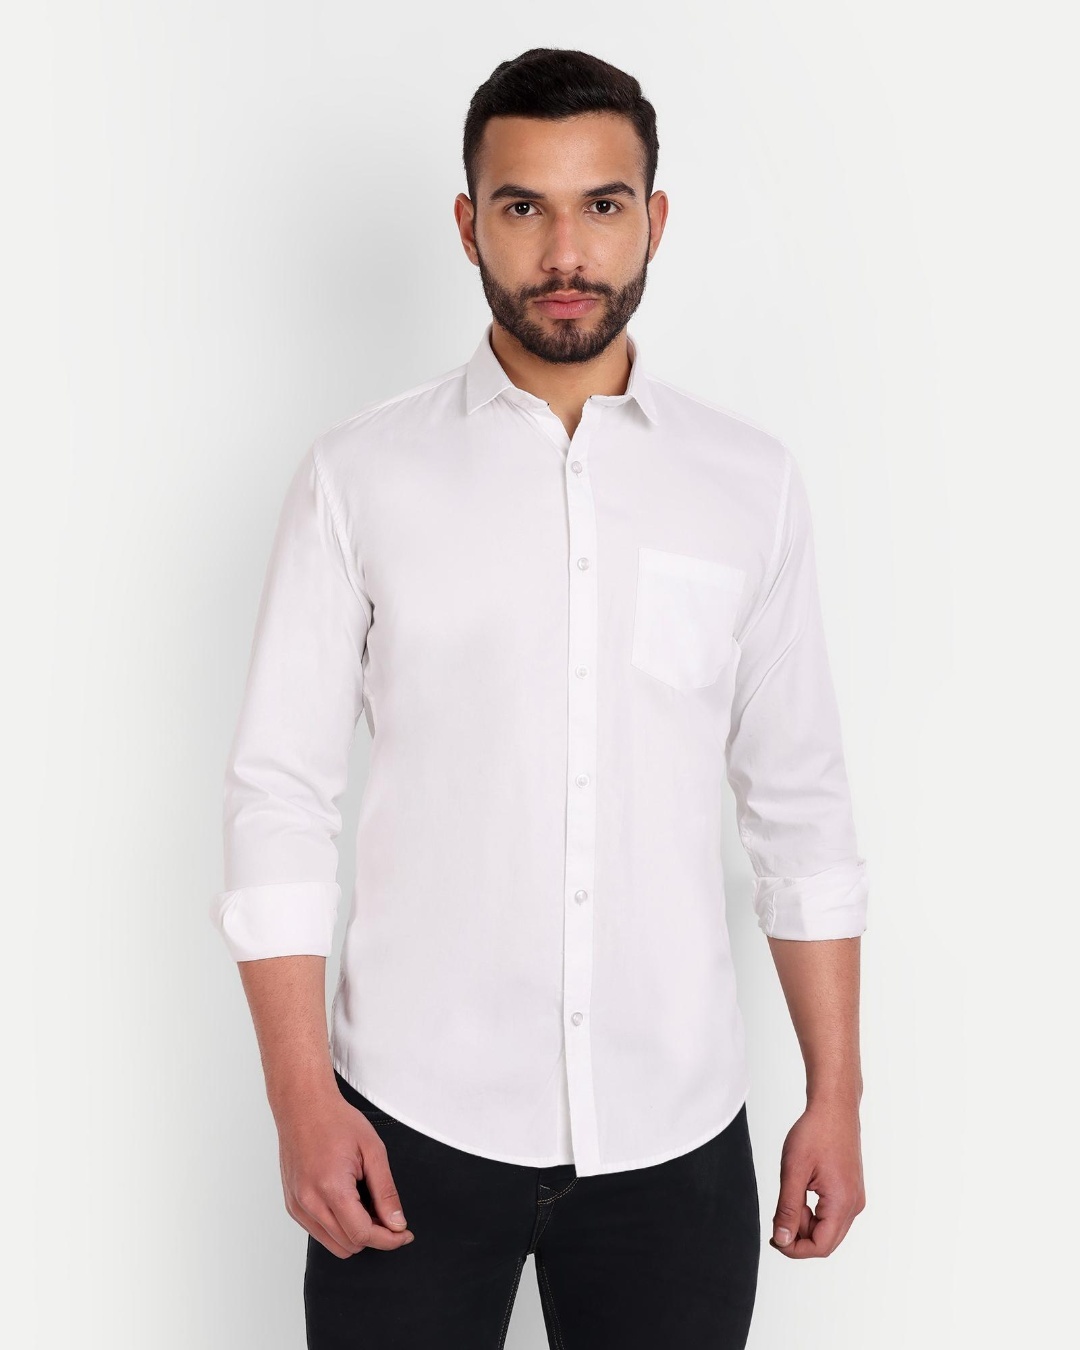 Buy Men's White Slim Fit Shirt Online at Bewakoof